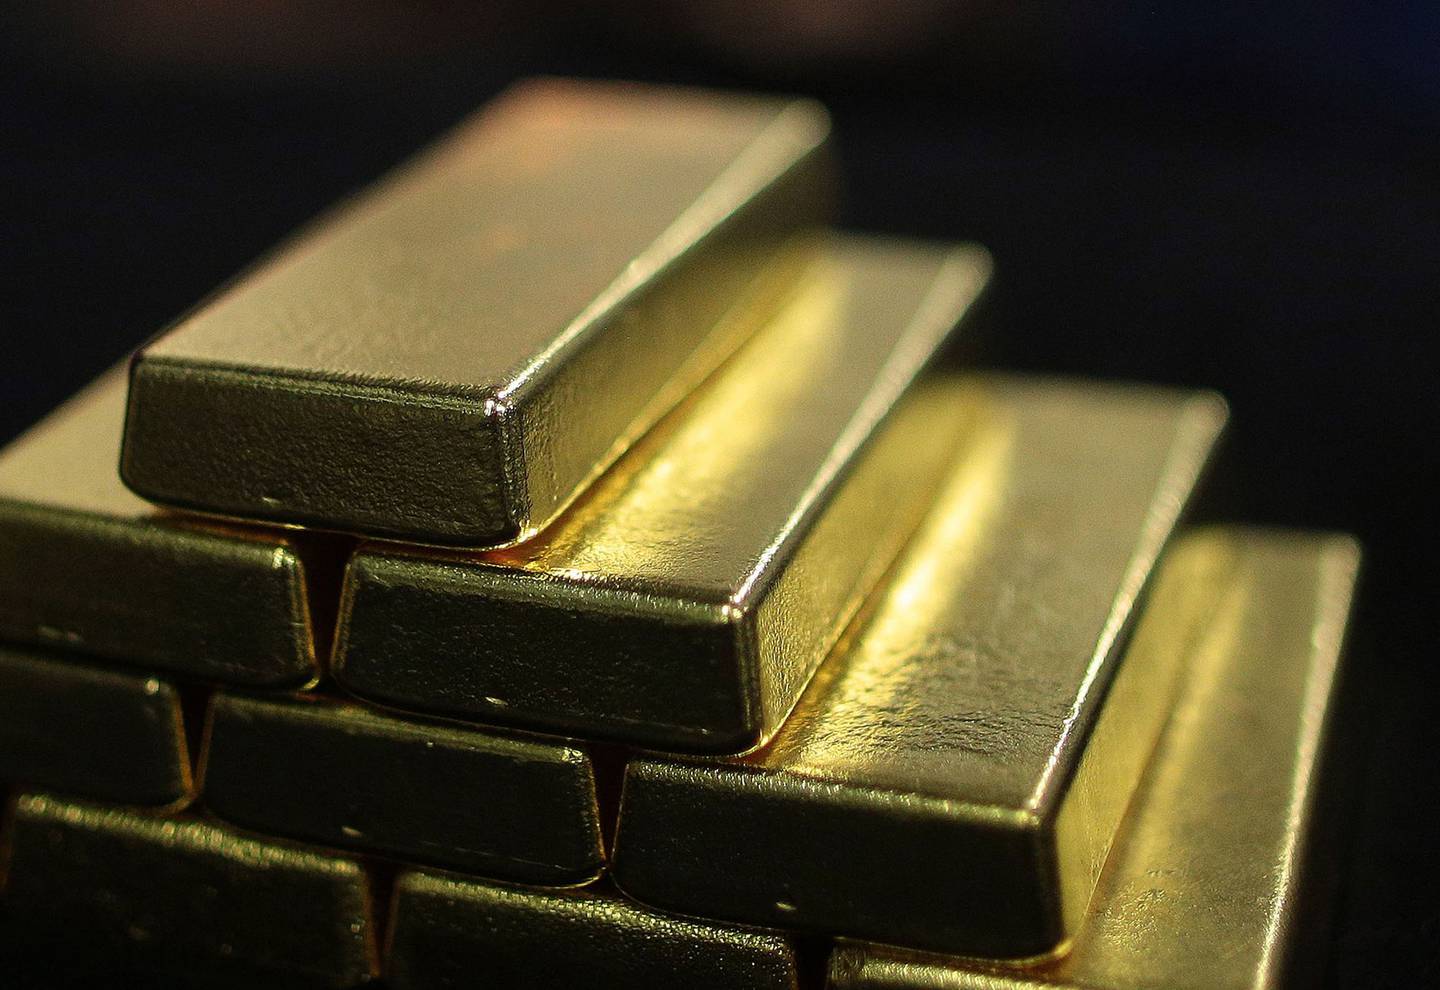 Barras de oro en una pila durante la producción de barras de oro en la planta de separación de oro y plata de Oegussa GmbH, una unidad de Umicore SA, en Viena, Austria, el viernes 16 de enero de 2015.